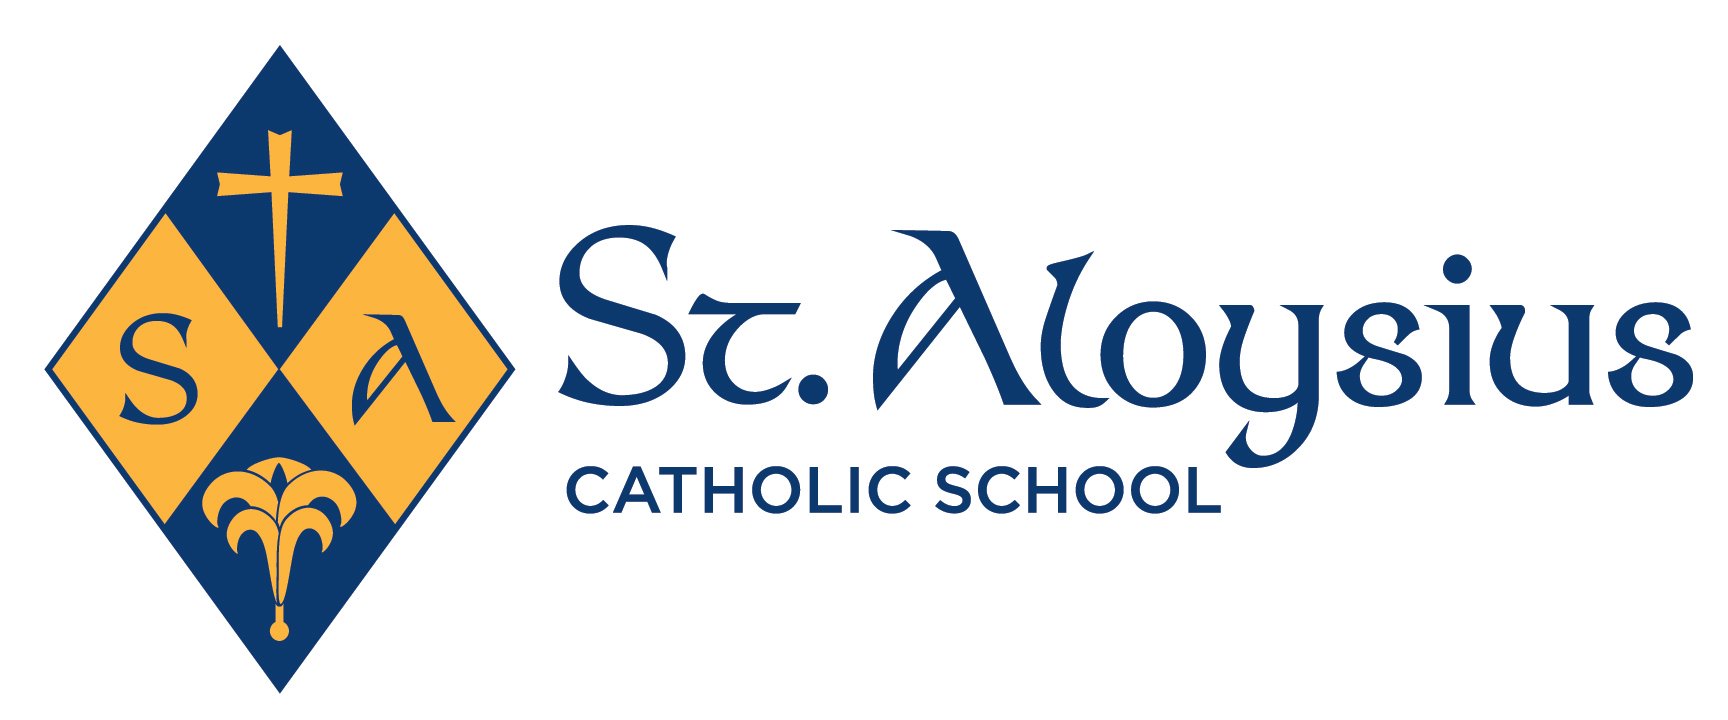 St. Aloysius Catholic School logo